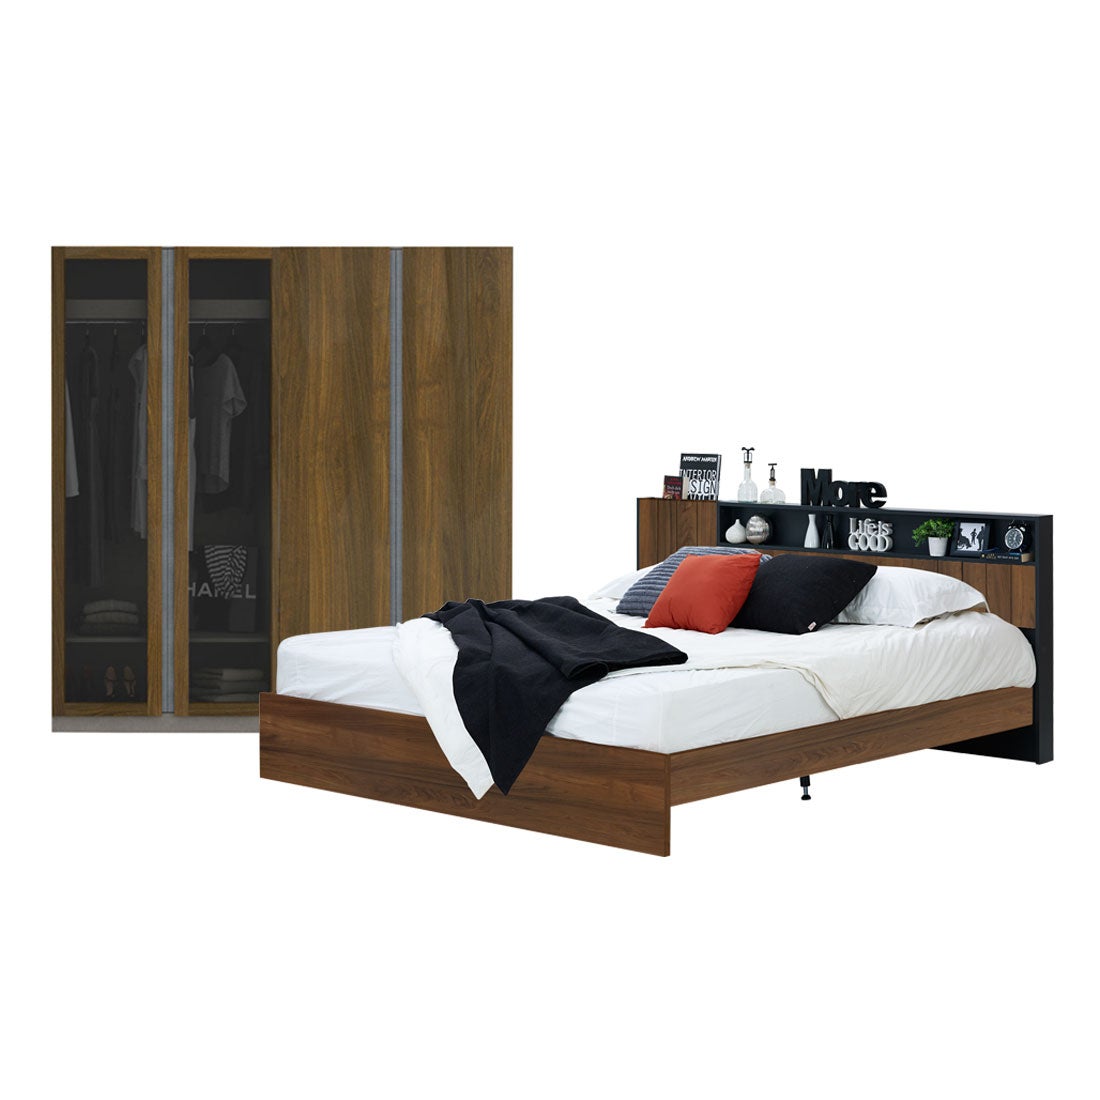 ชุดห้องนอน 5 ฟุต รุ่น Diago & ตู้เสื้อผ้า Blox สีไม้เข้ม01